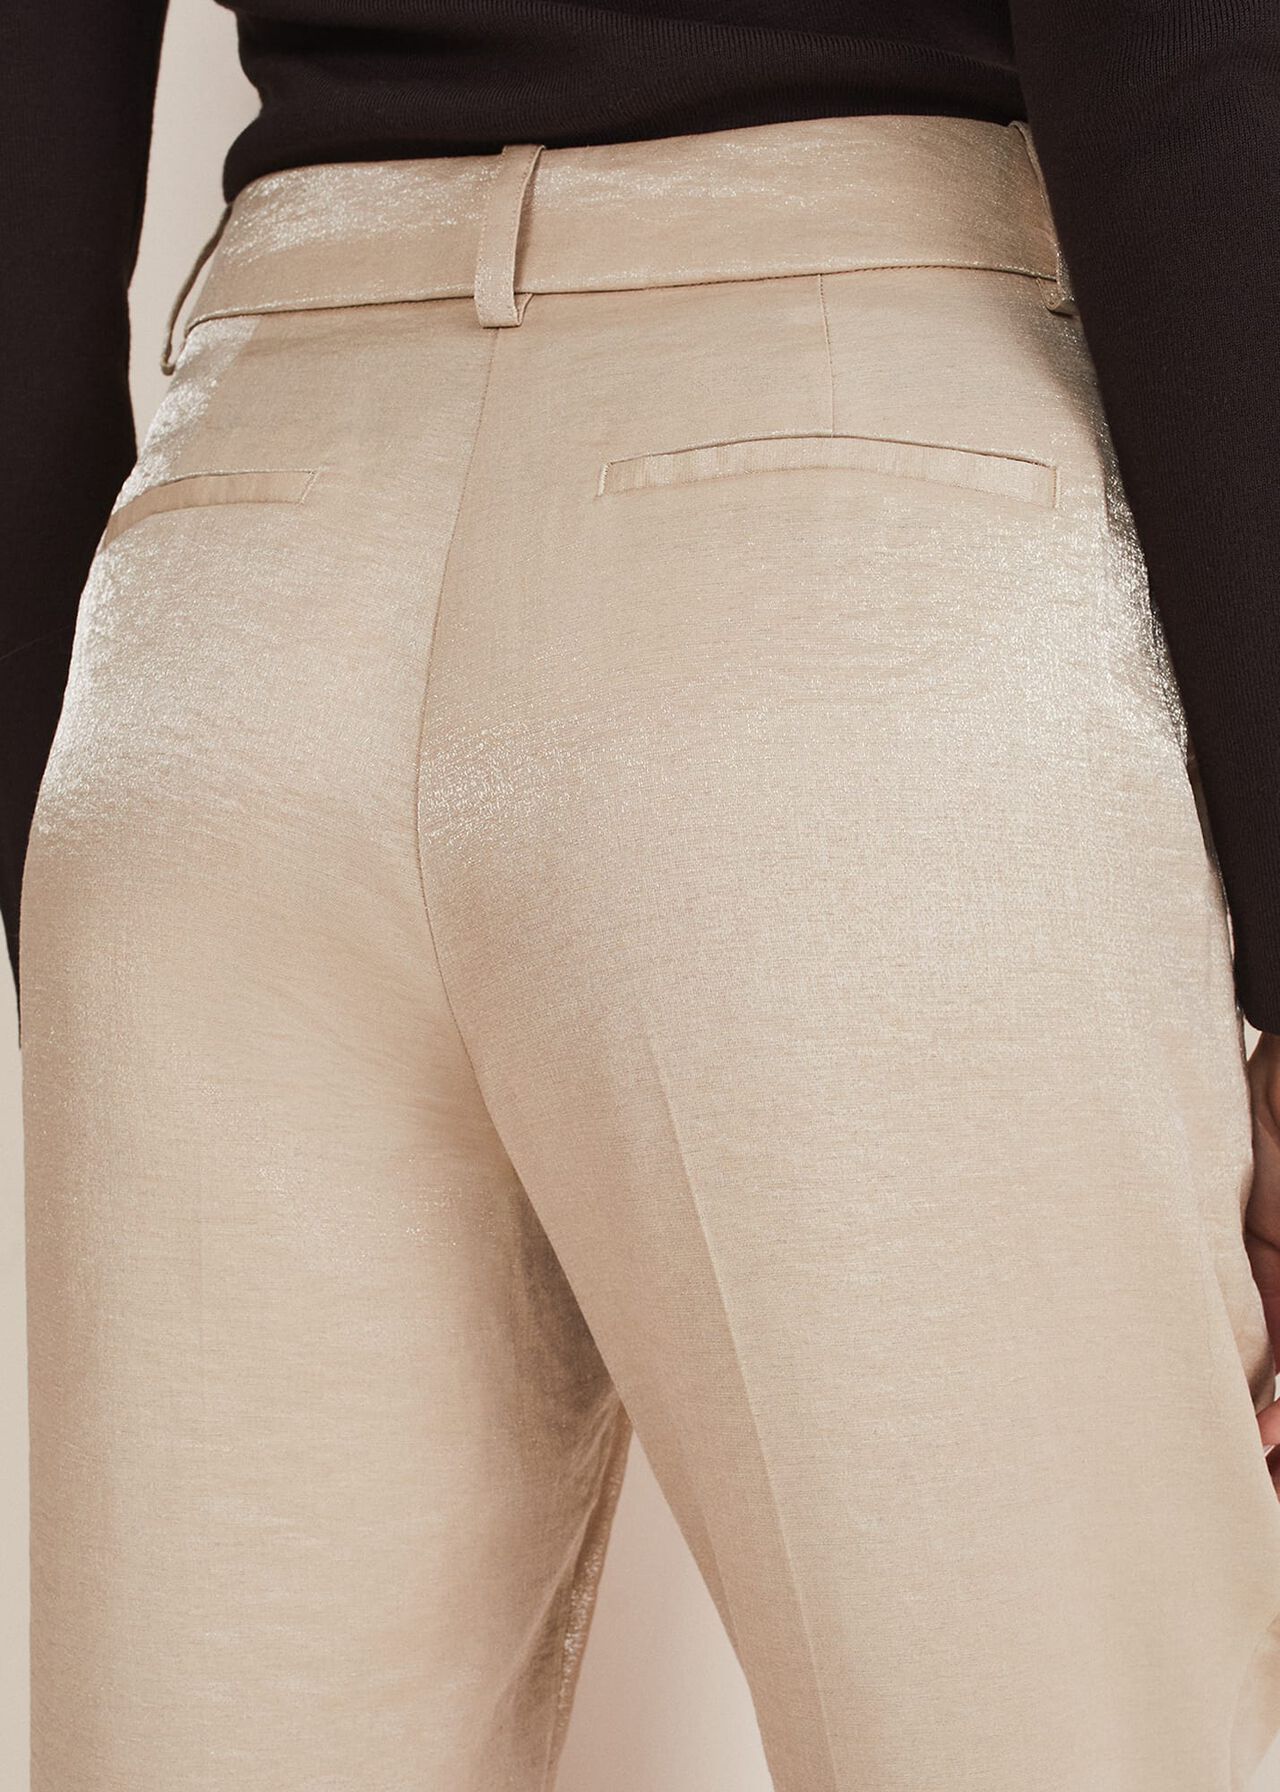 Kehlani Shimmer Peg Trouser Co-Ord